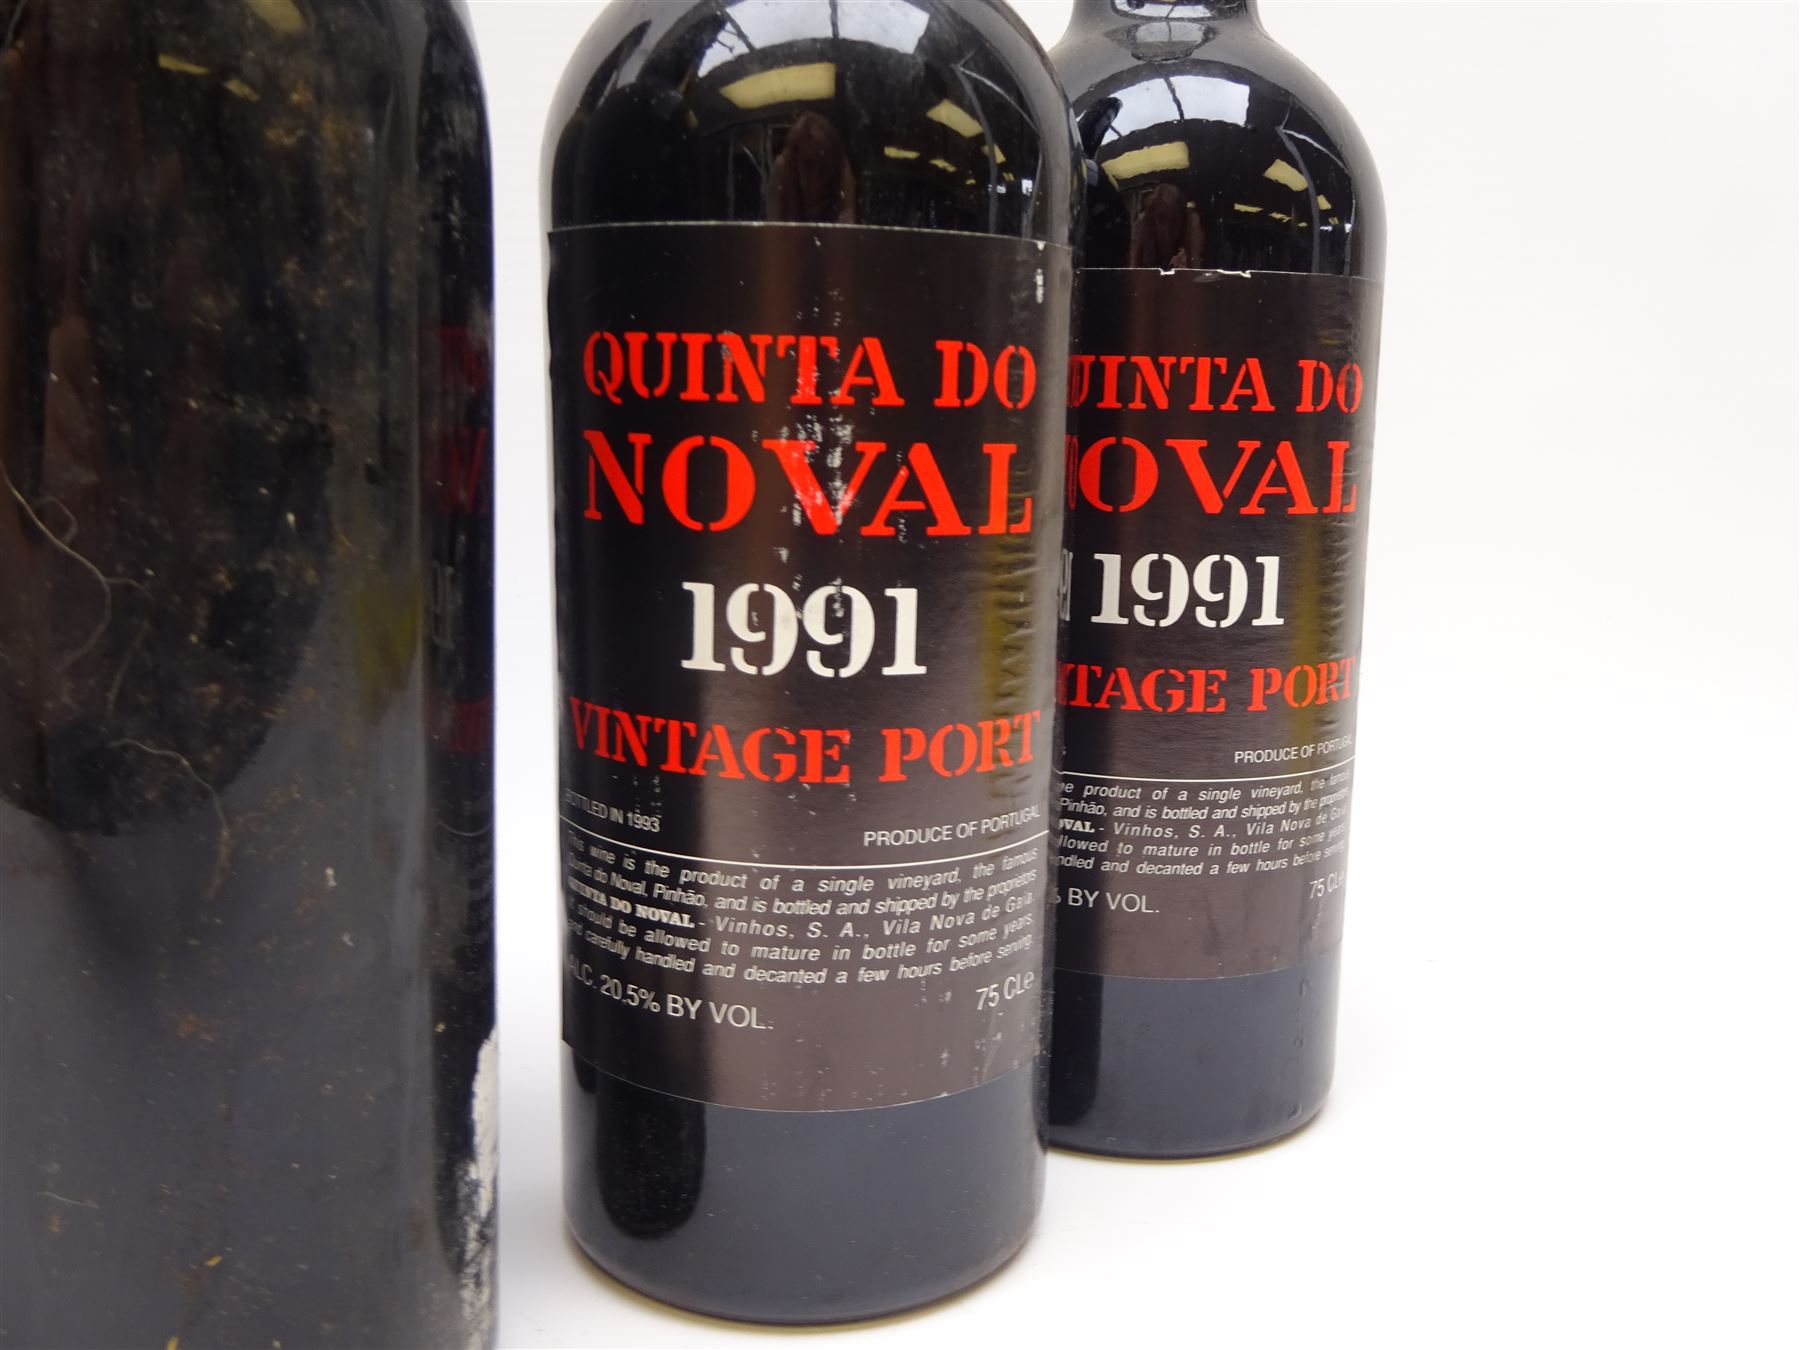 Vintage port including two bottles of Quinta Do Noval 1991 - Image 2 of 6